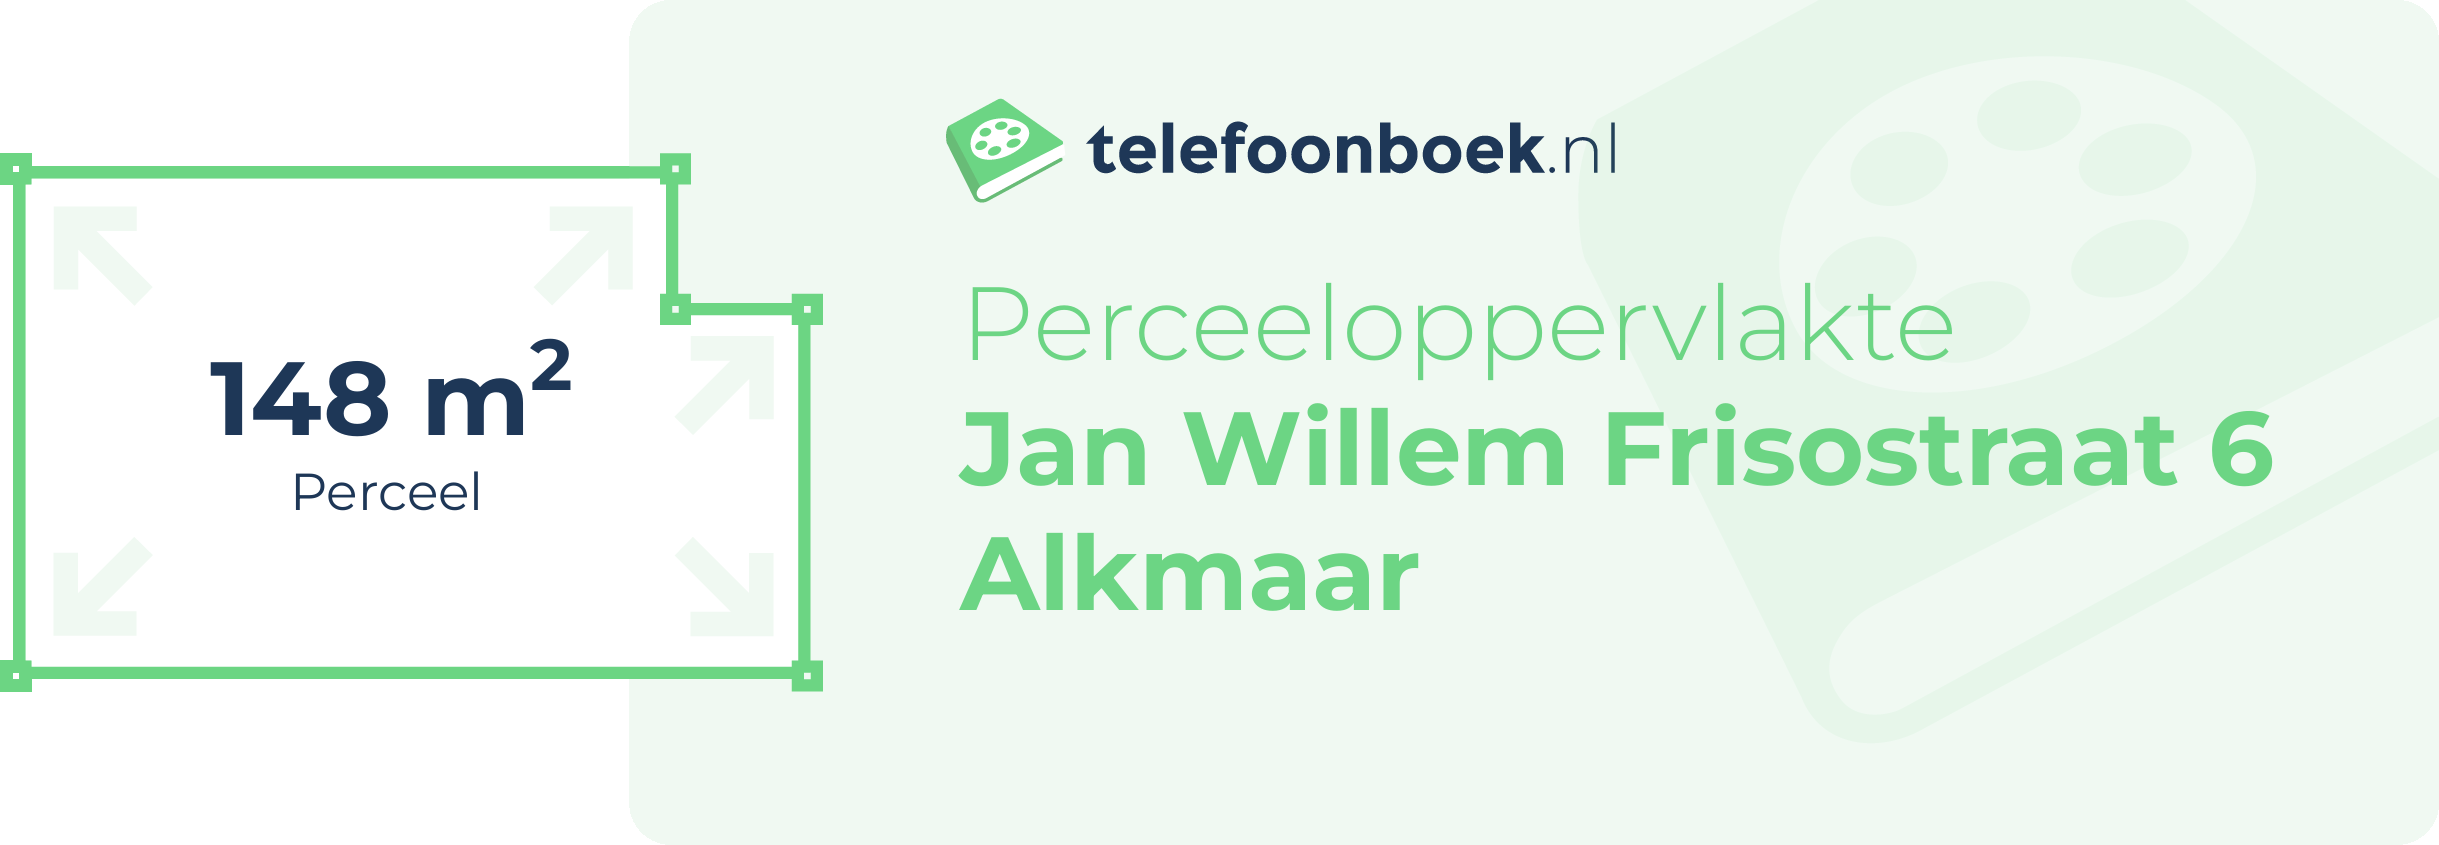 Perceeloppervlakte Jan Willem Frisostraat 6 Alkmaar